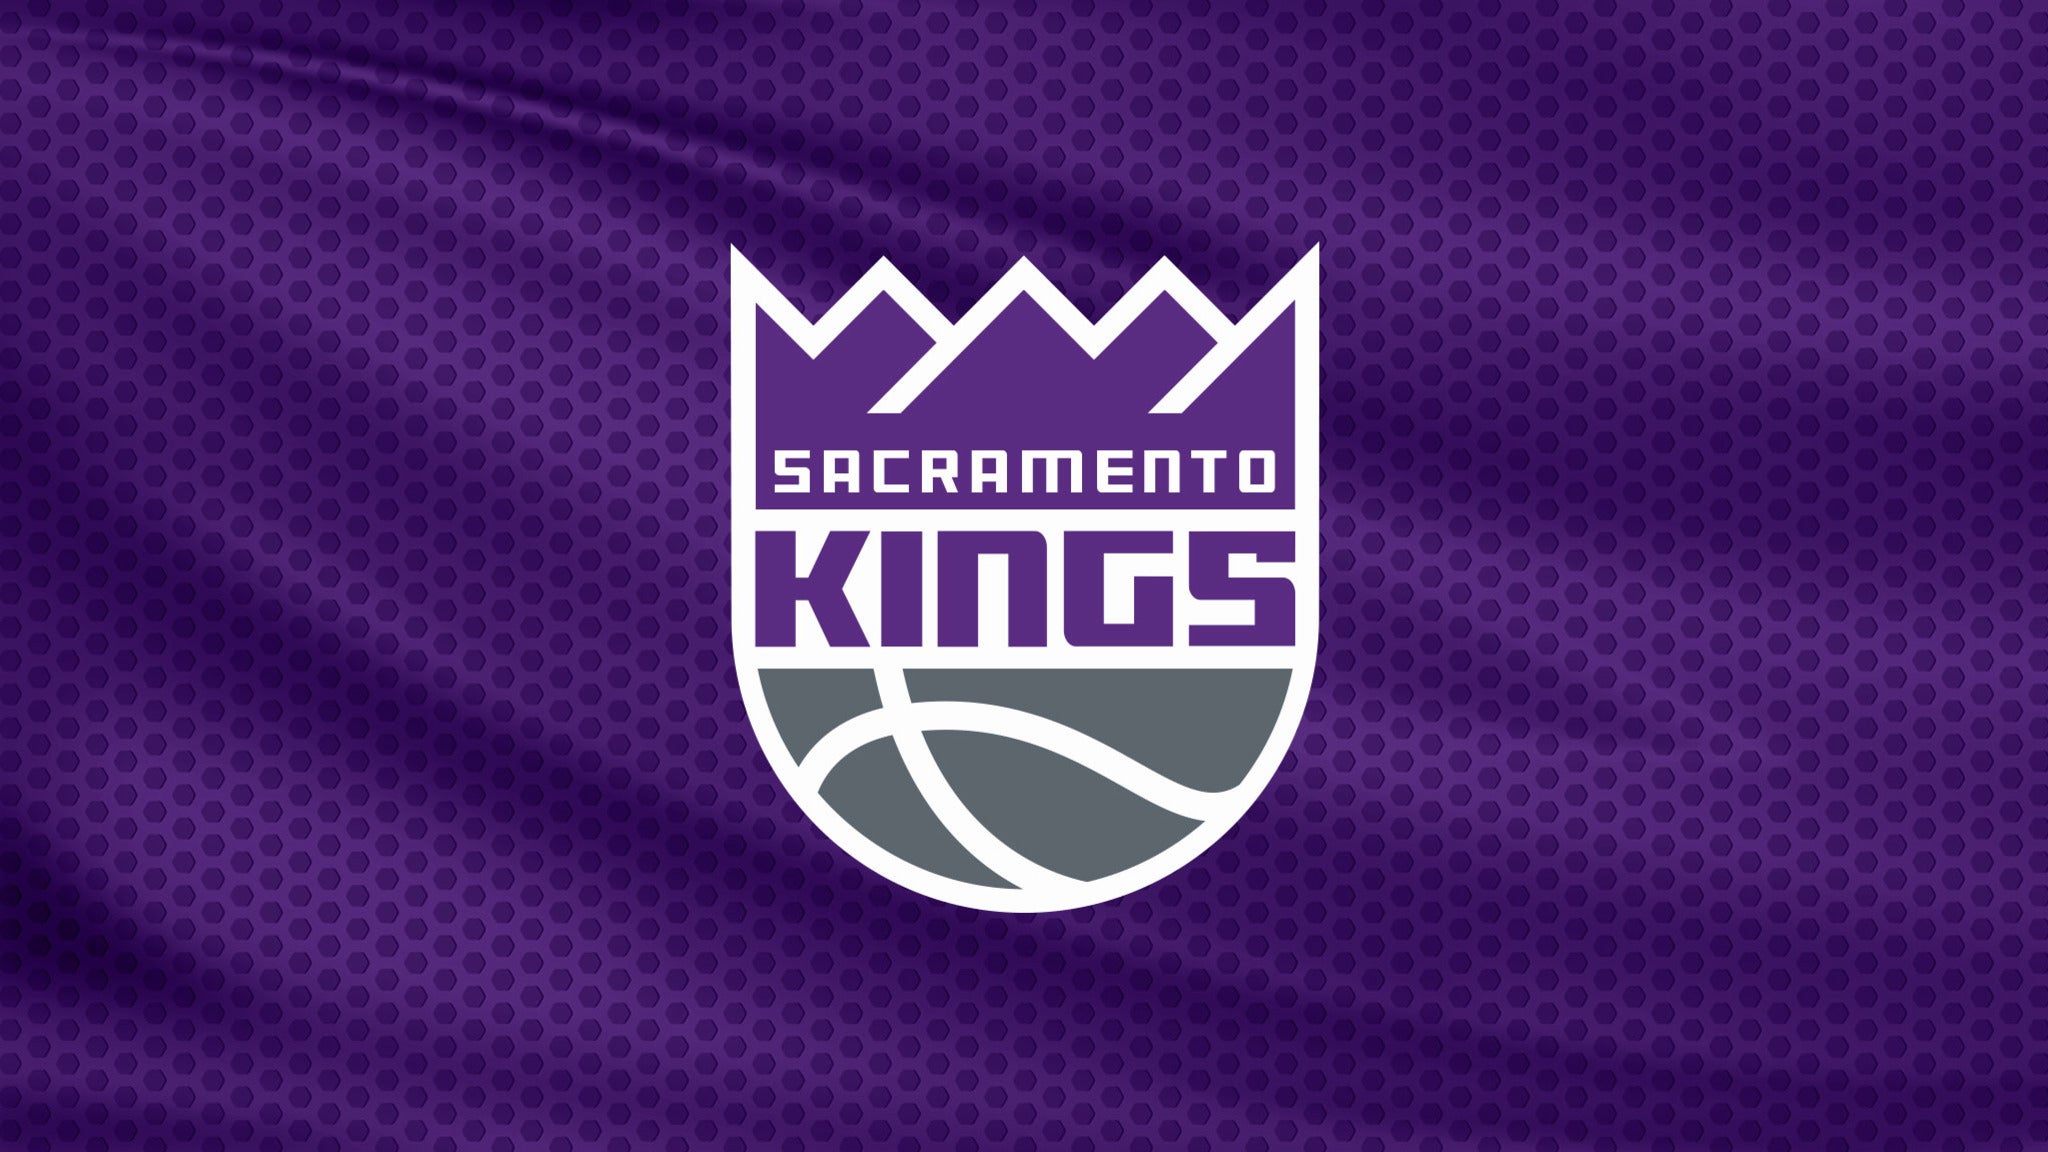 Sacramento Kings vs. Orlando Magic at Golden 1 Center - Sacramento, CA 95814